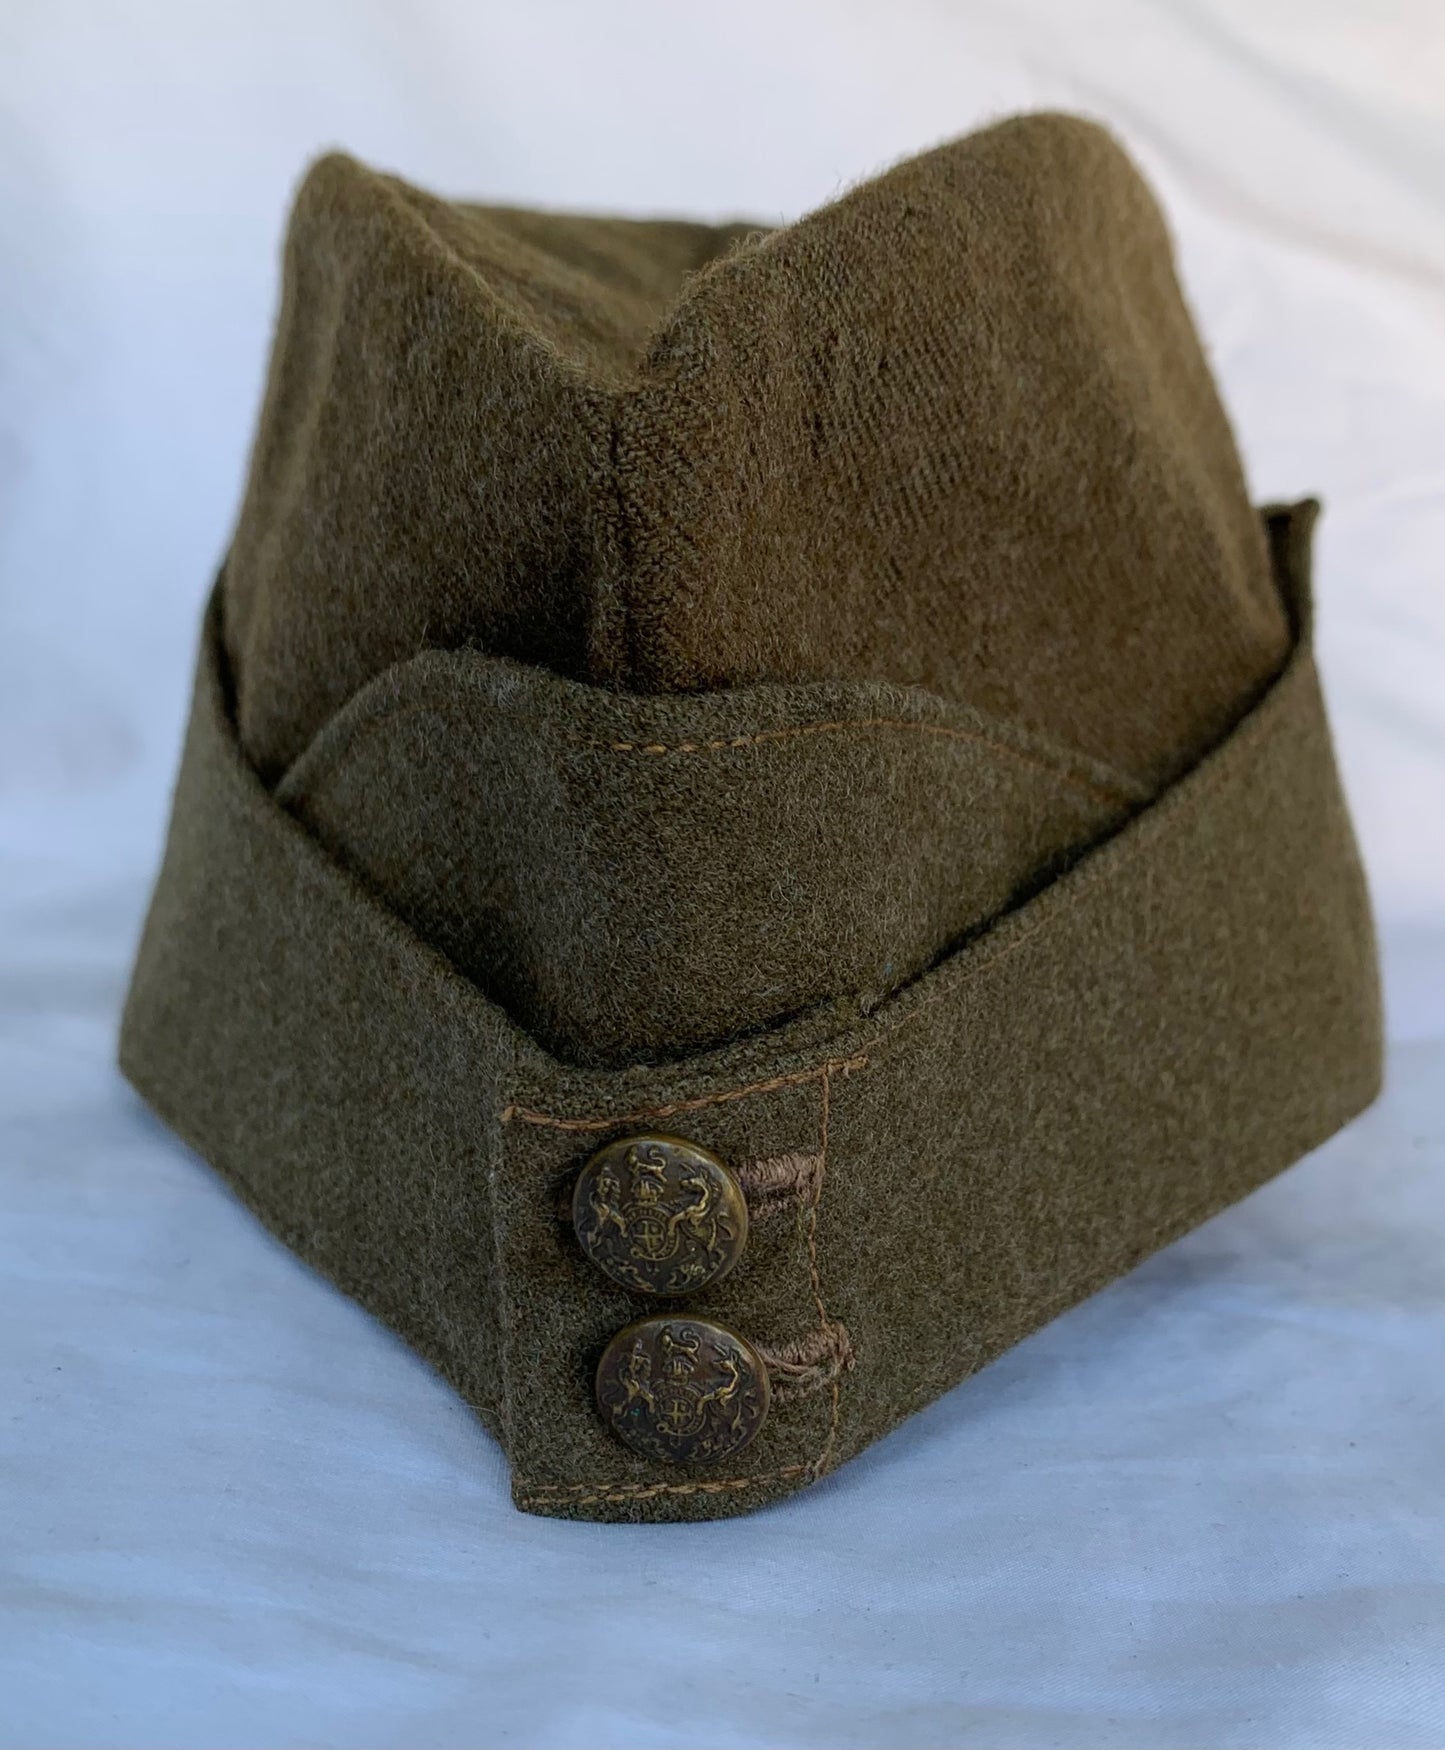 WW2 British Army Side Cap dated 1940